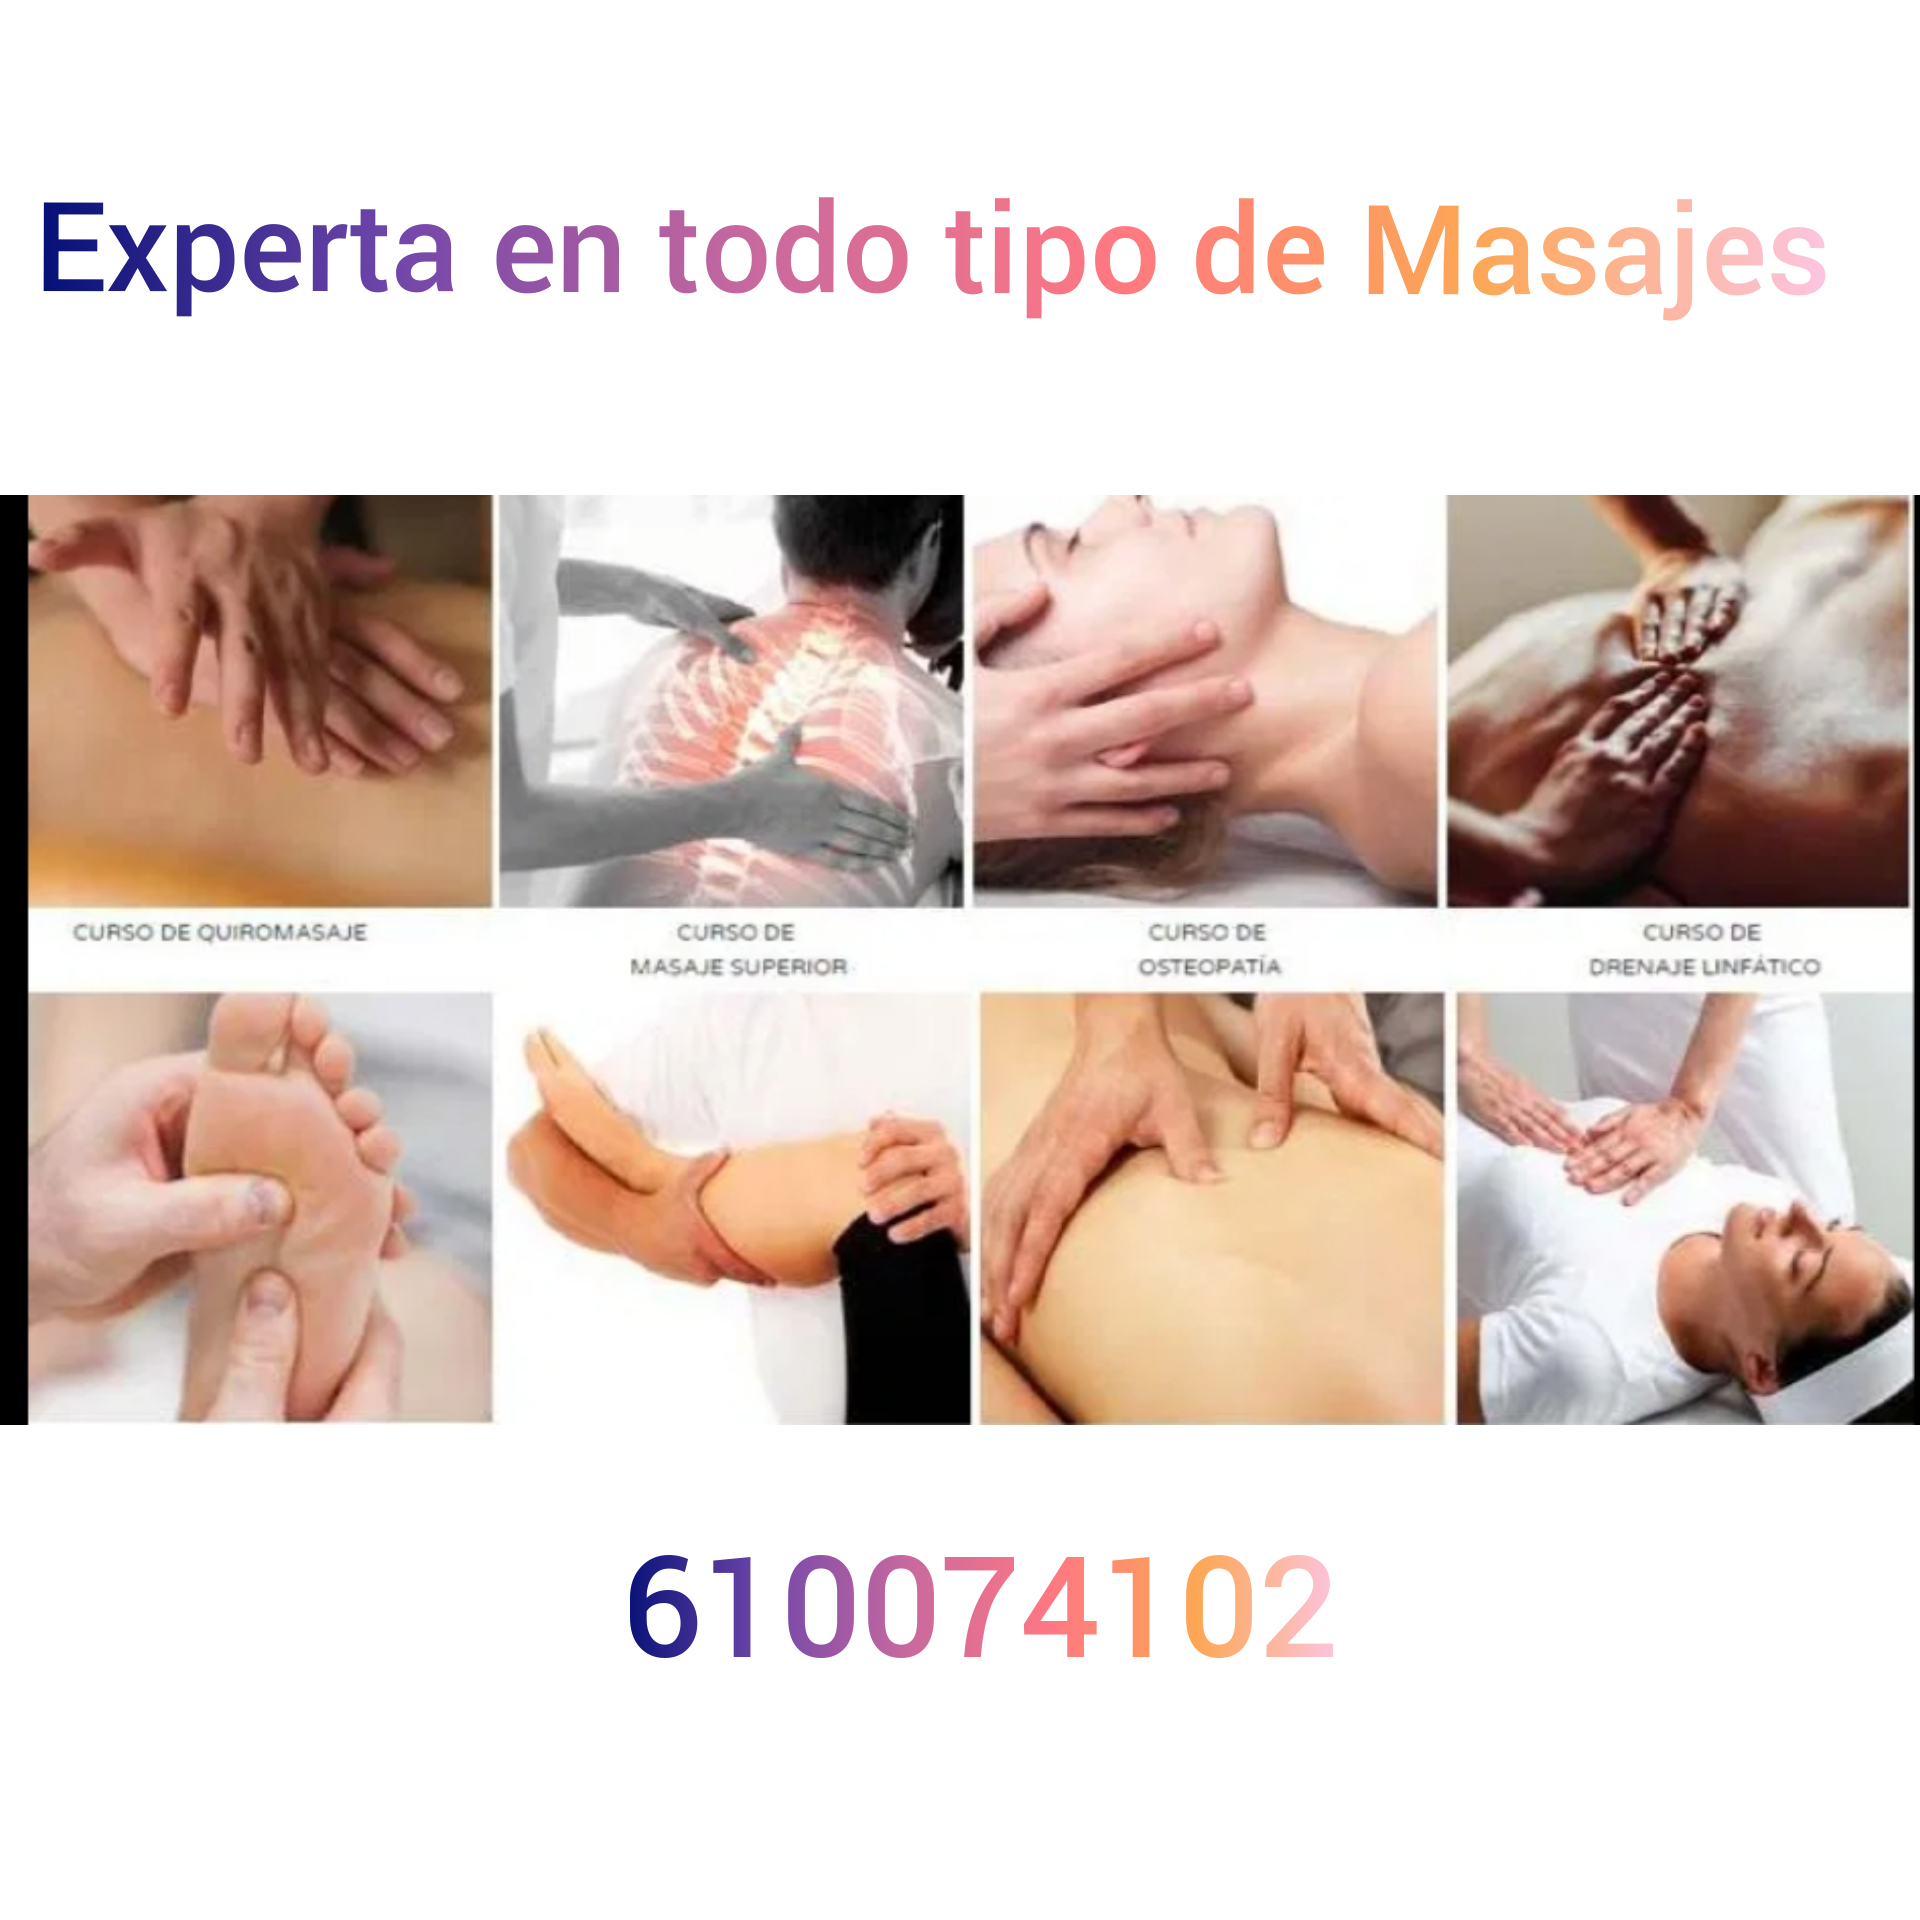 masajistas-terapeuticos madrid Experta en todo tipo de masajes 